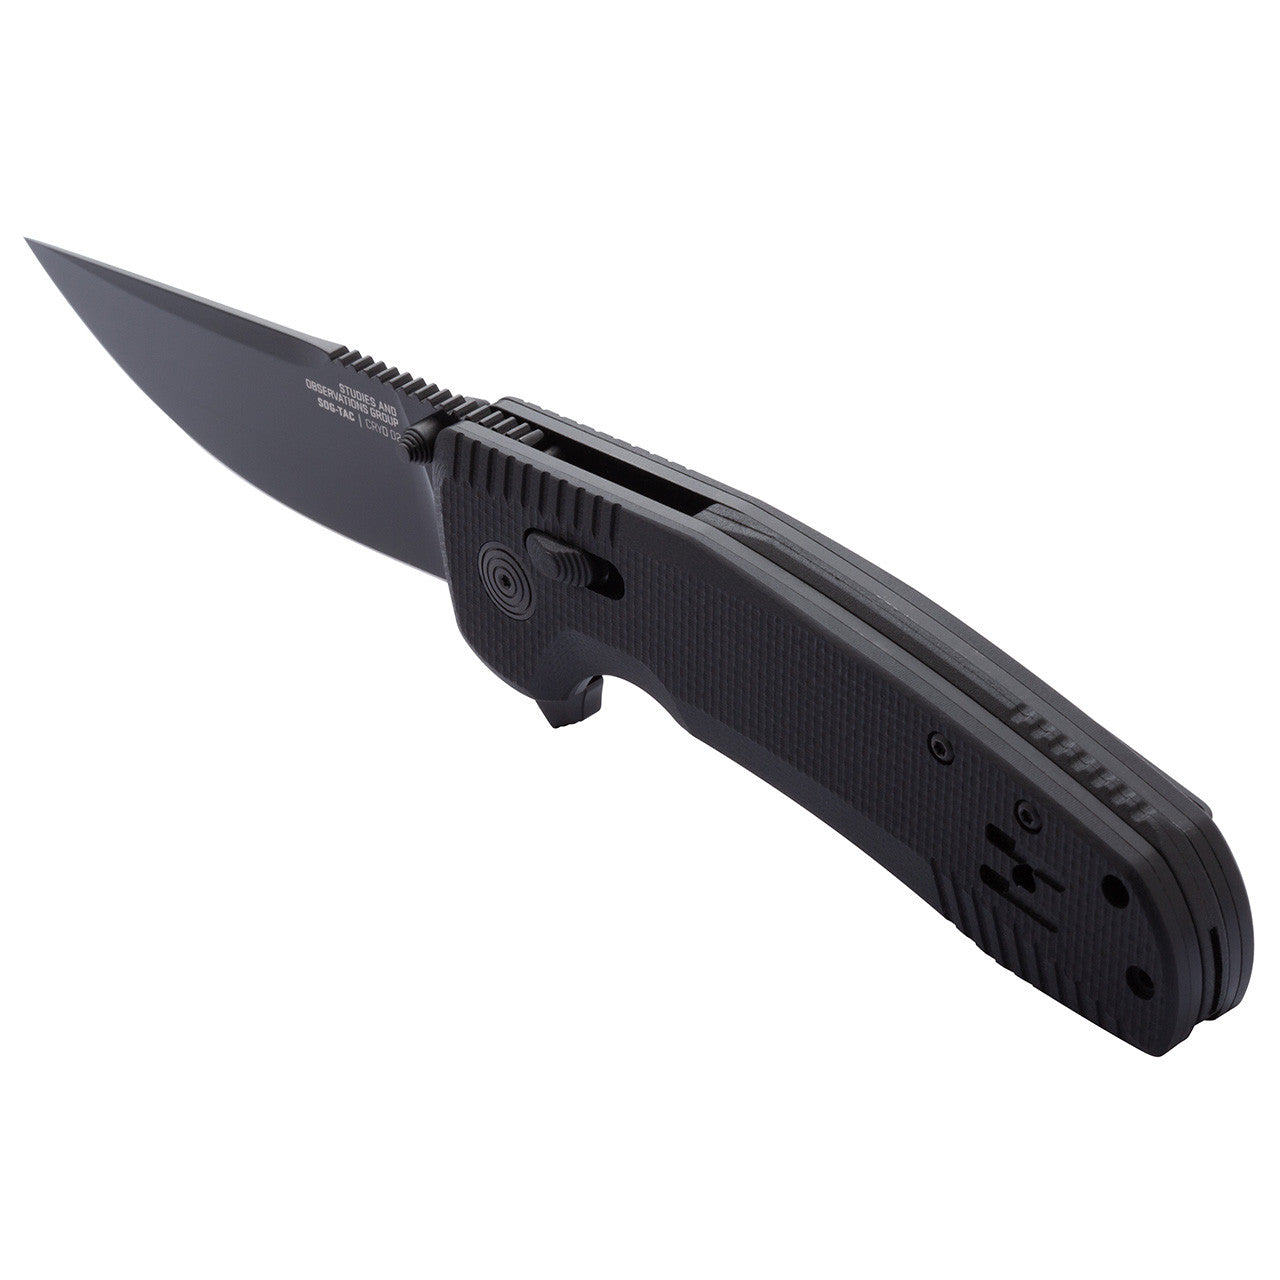 SOG SOG-TAC XR Blackout 3.39" D2 G10 Folding Knife